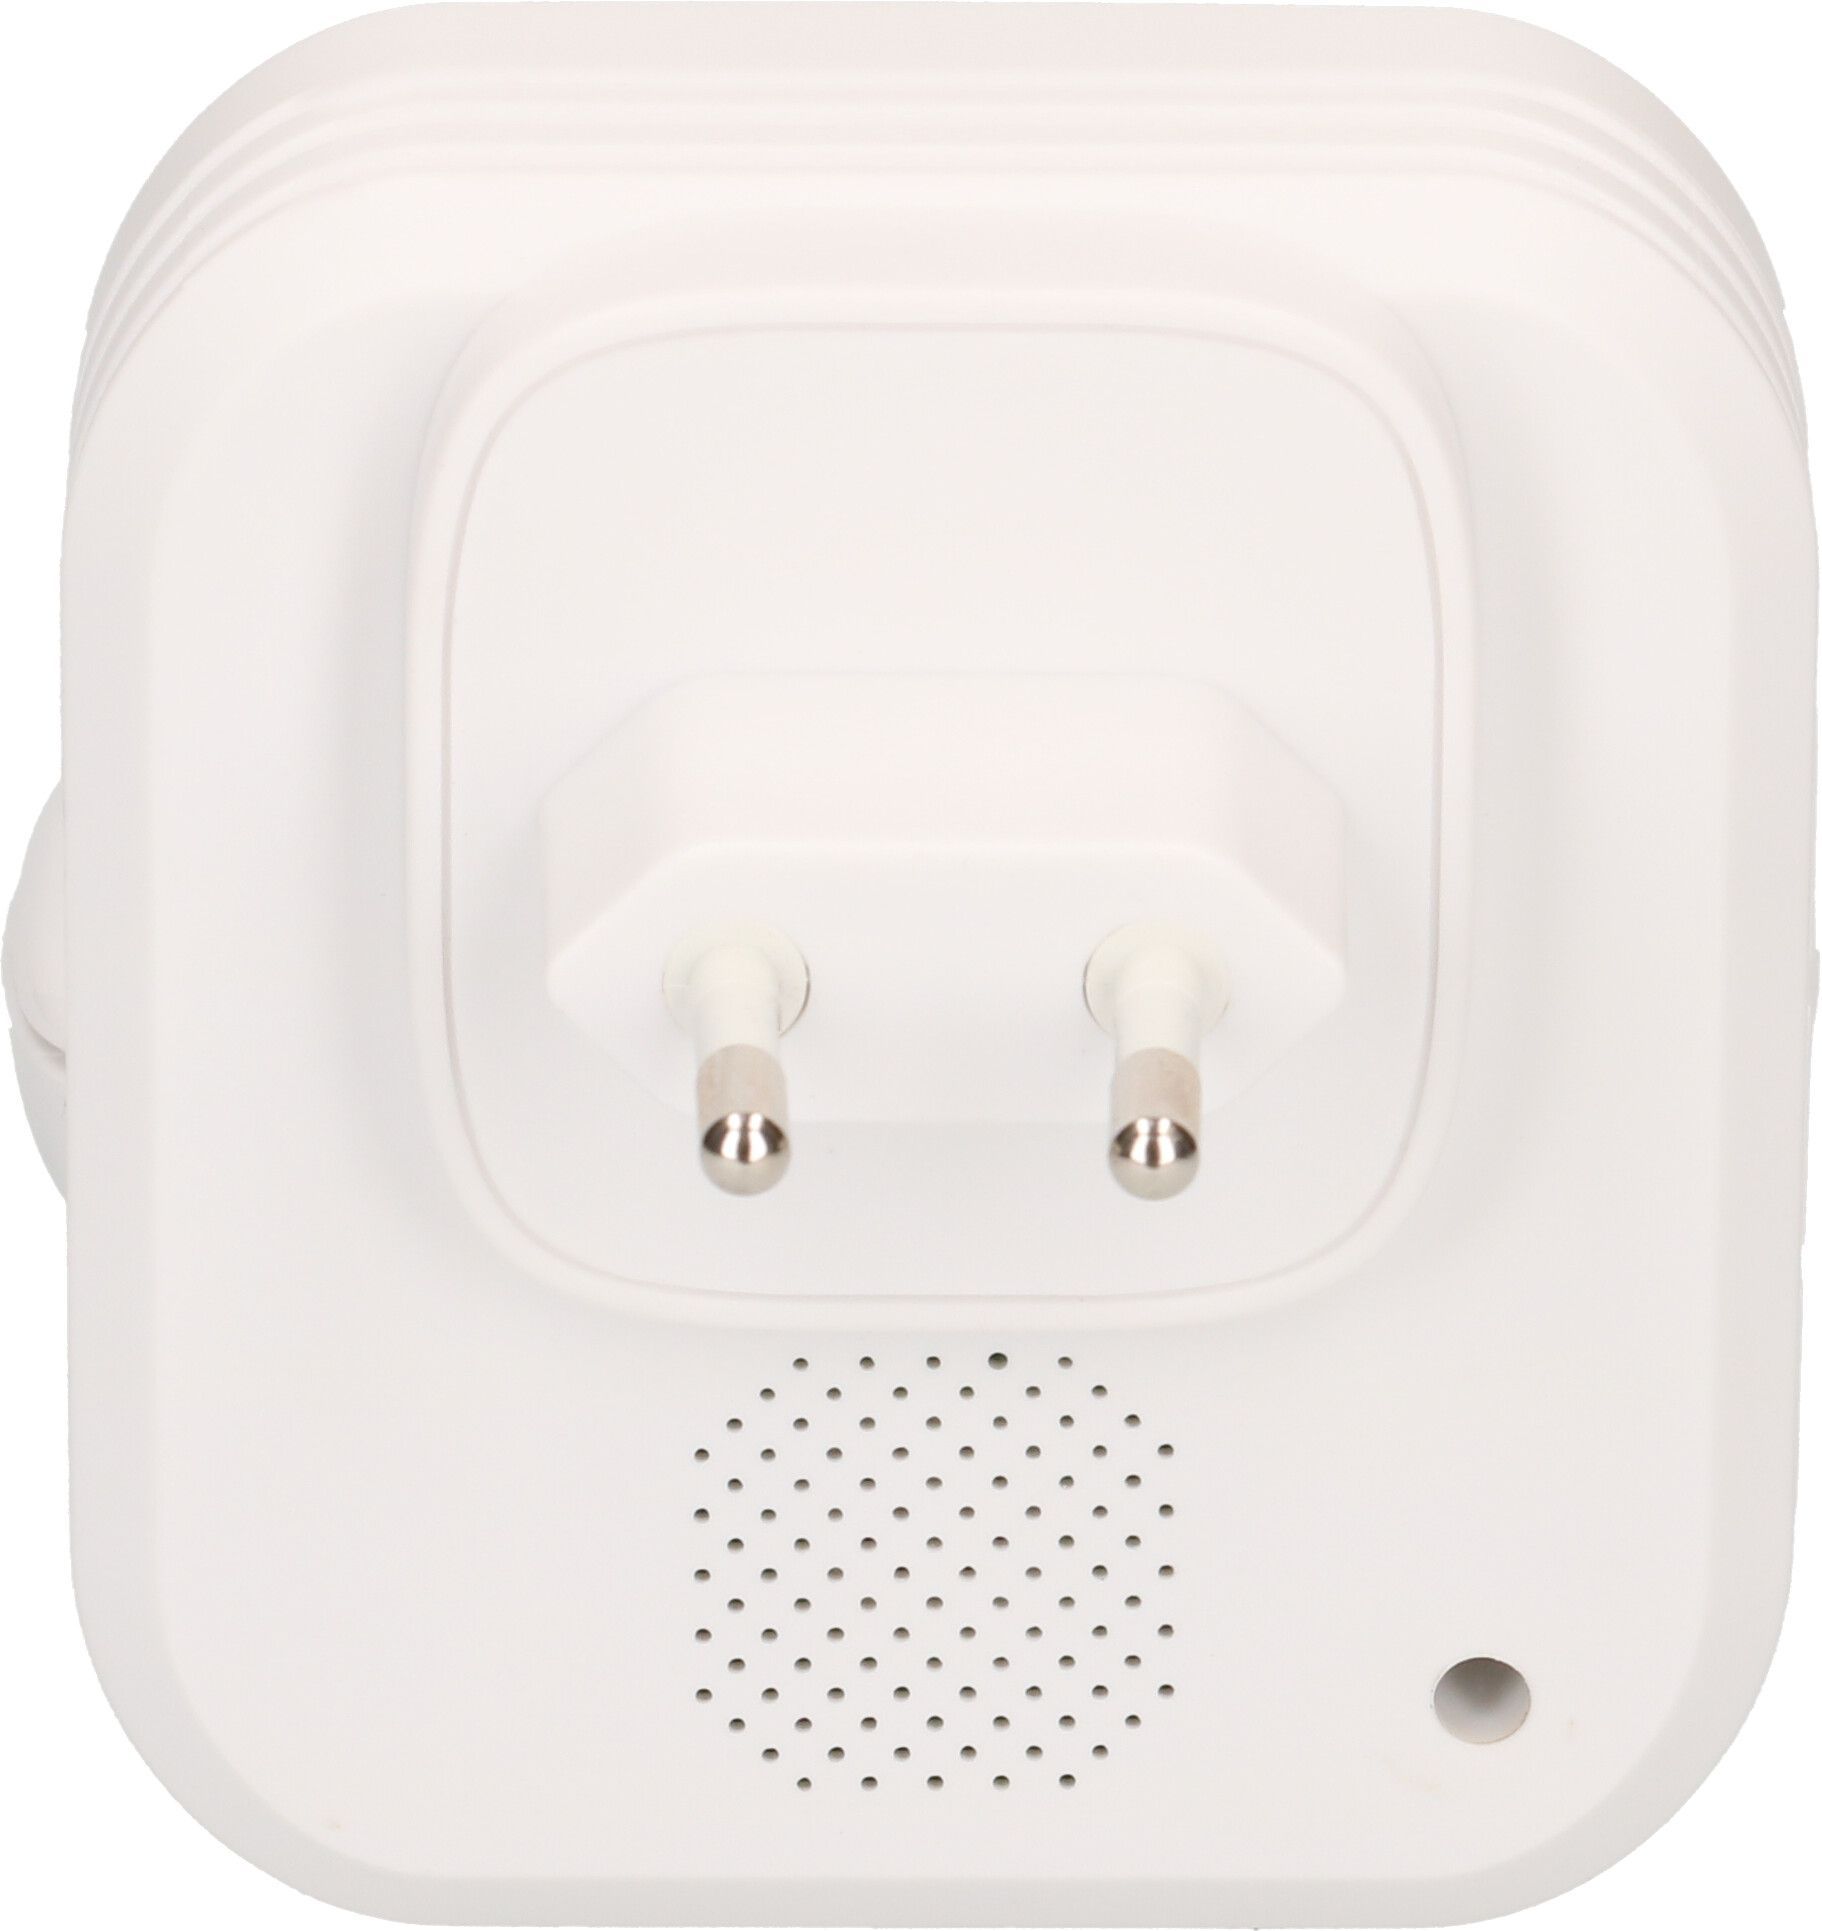 Doorbell-set wireless white